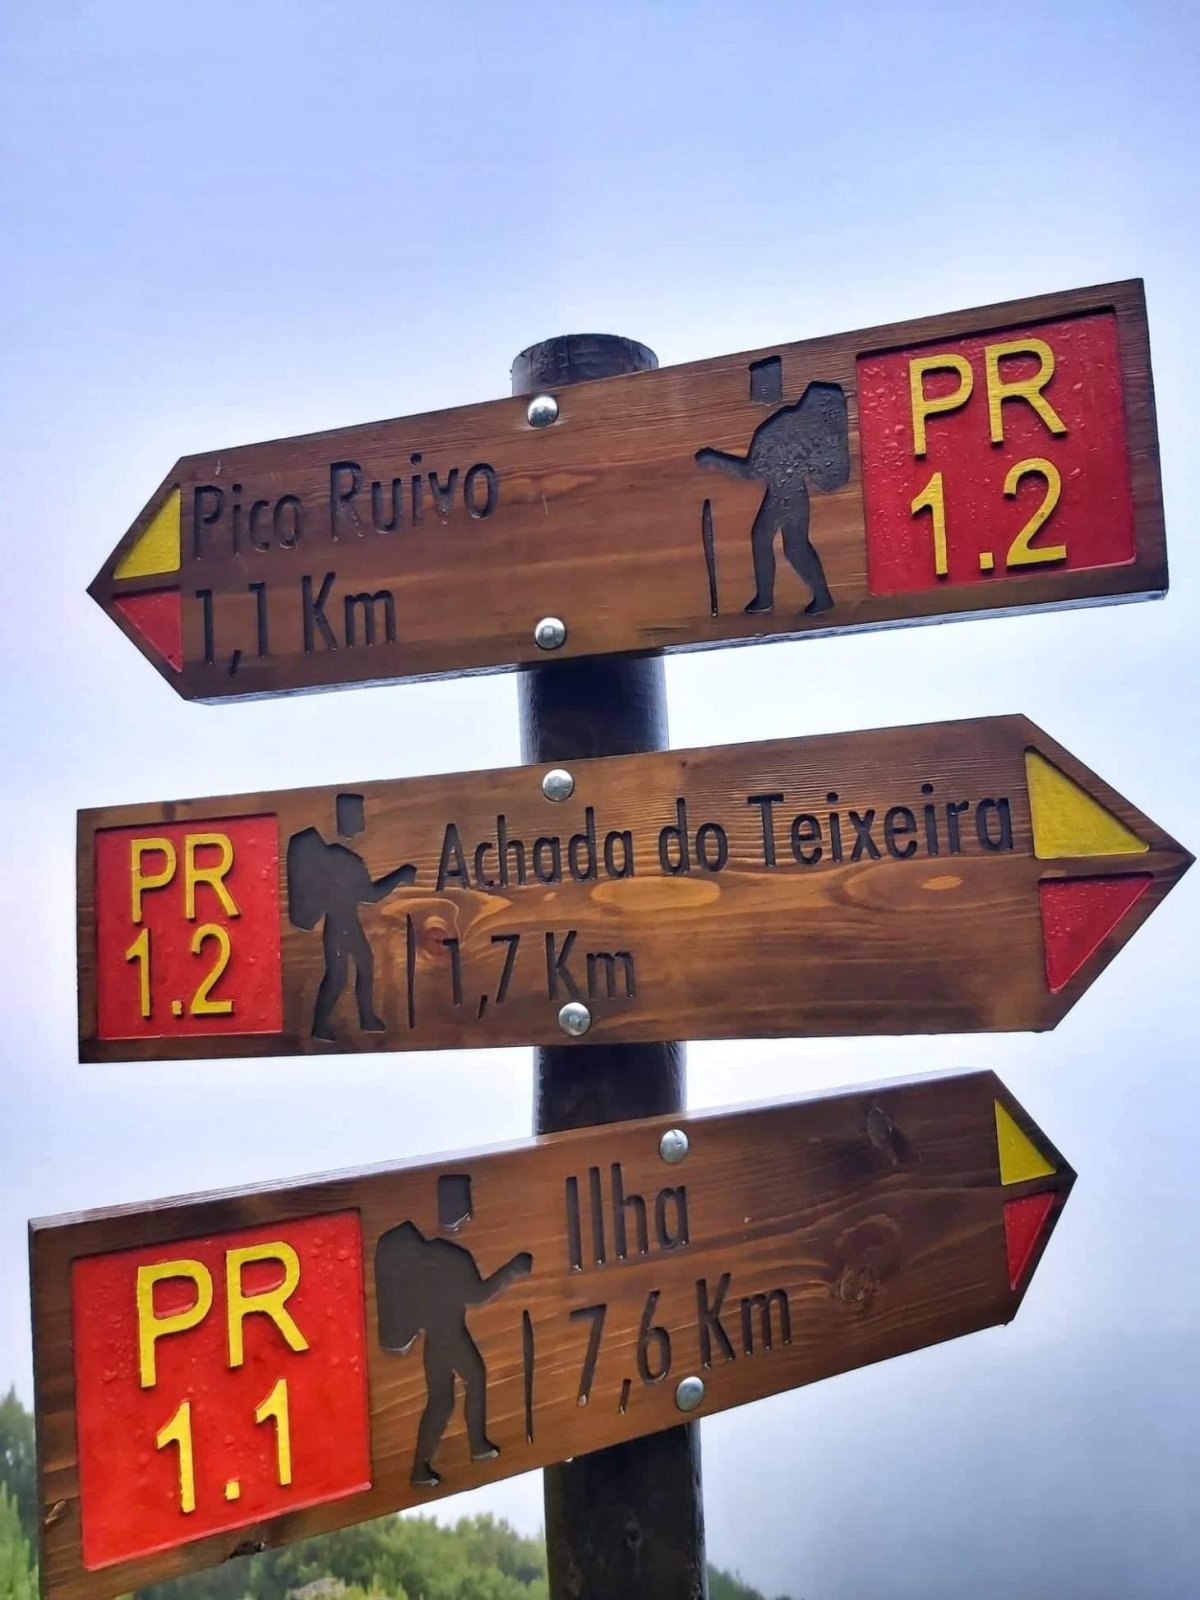 cesta na Pico Ruivo